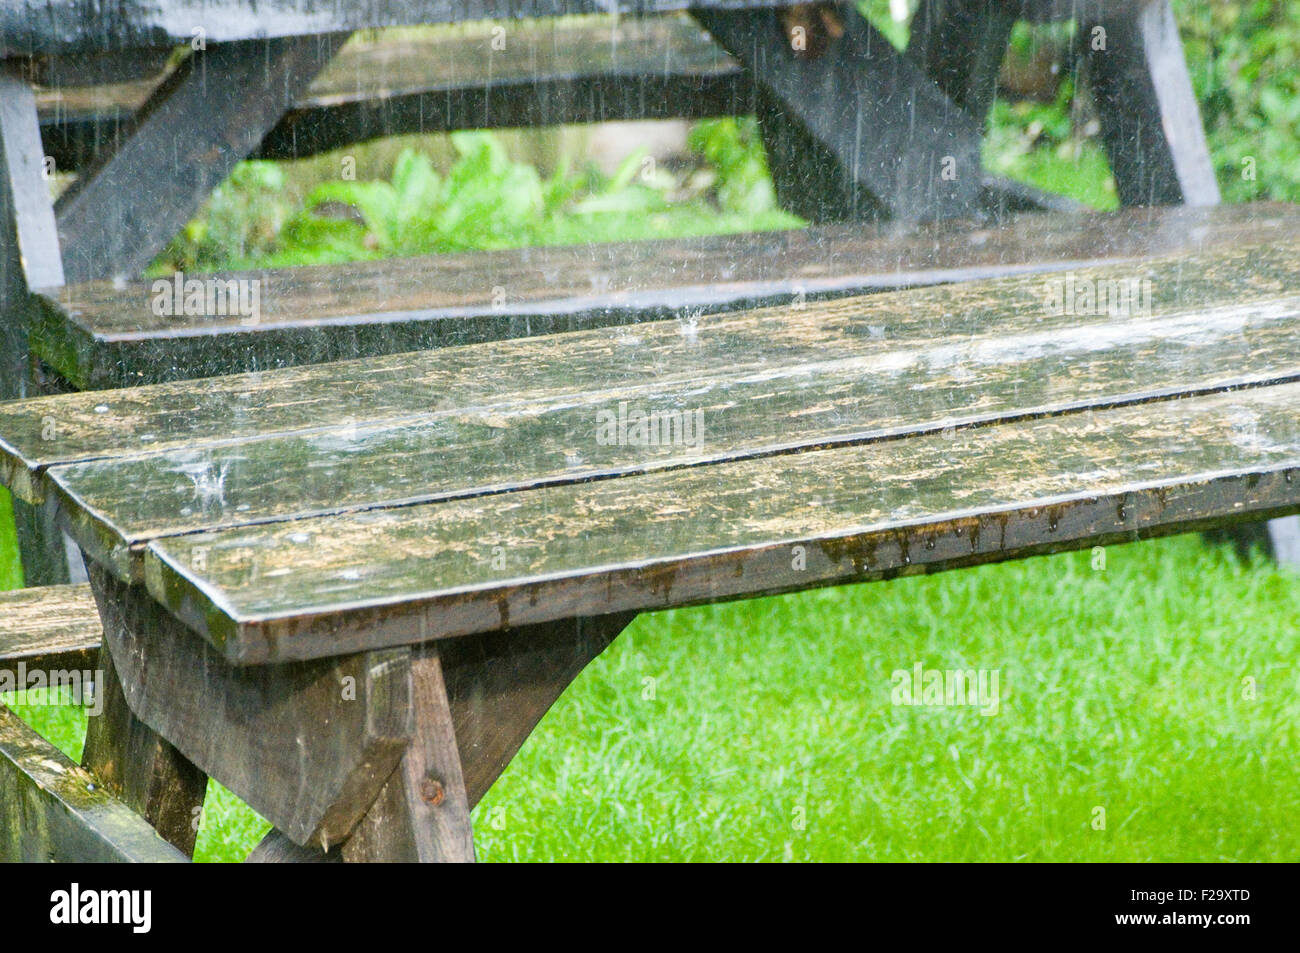 El clima húmedo picnic picnic tabla tablas de English Summer Rain lloviendo verano lluvioso día fue decolorar fuertes splash Foto de stock